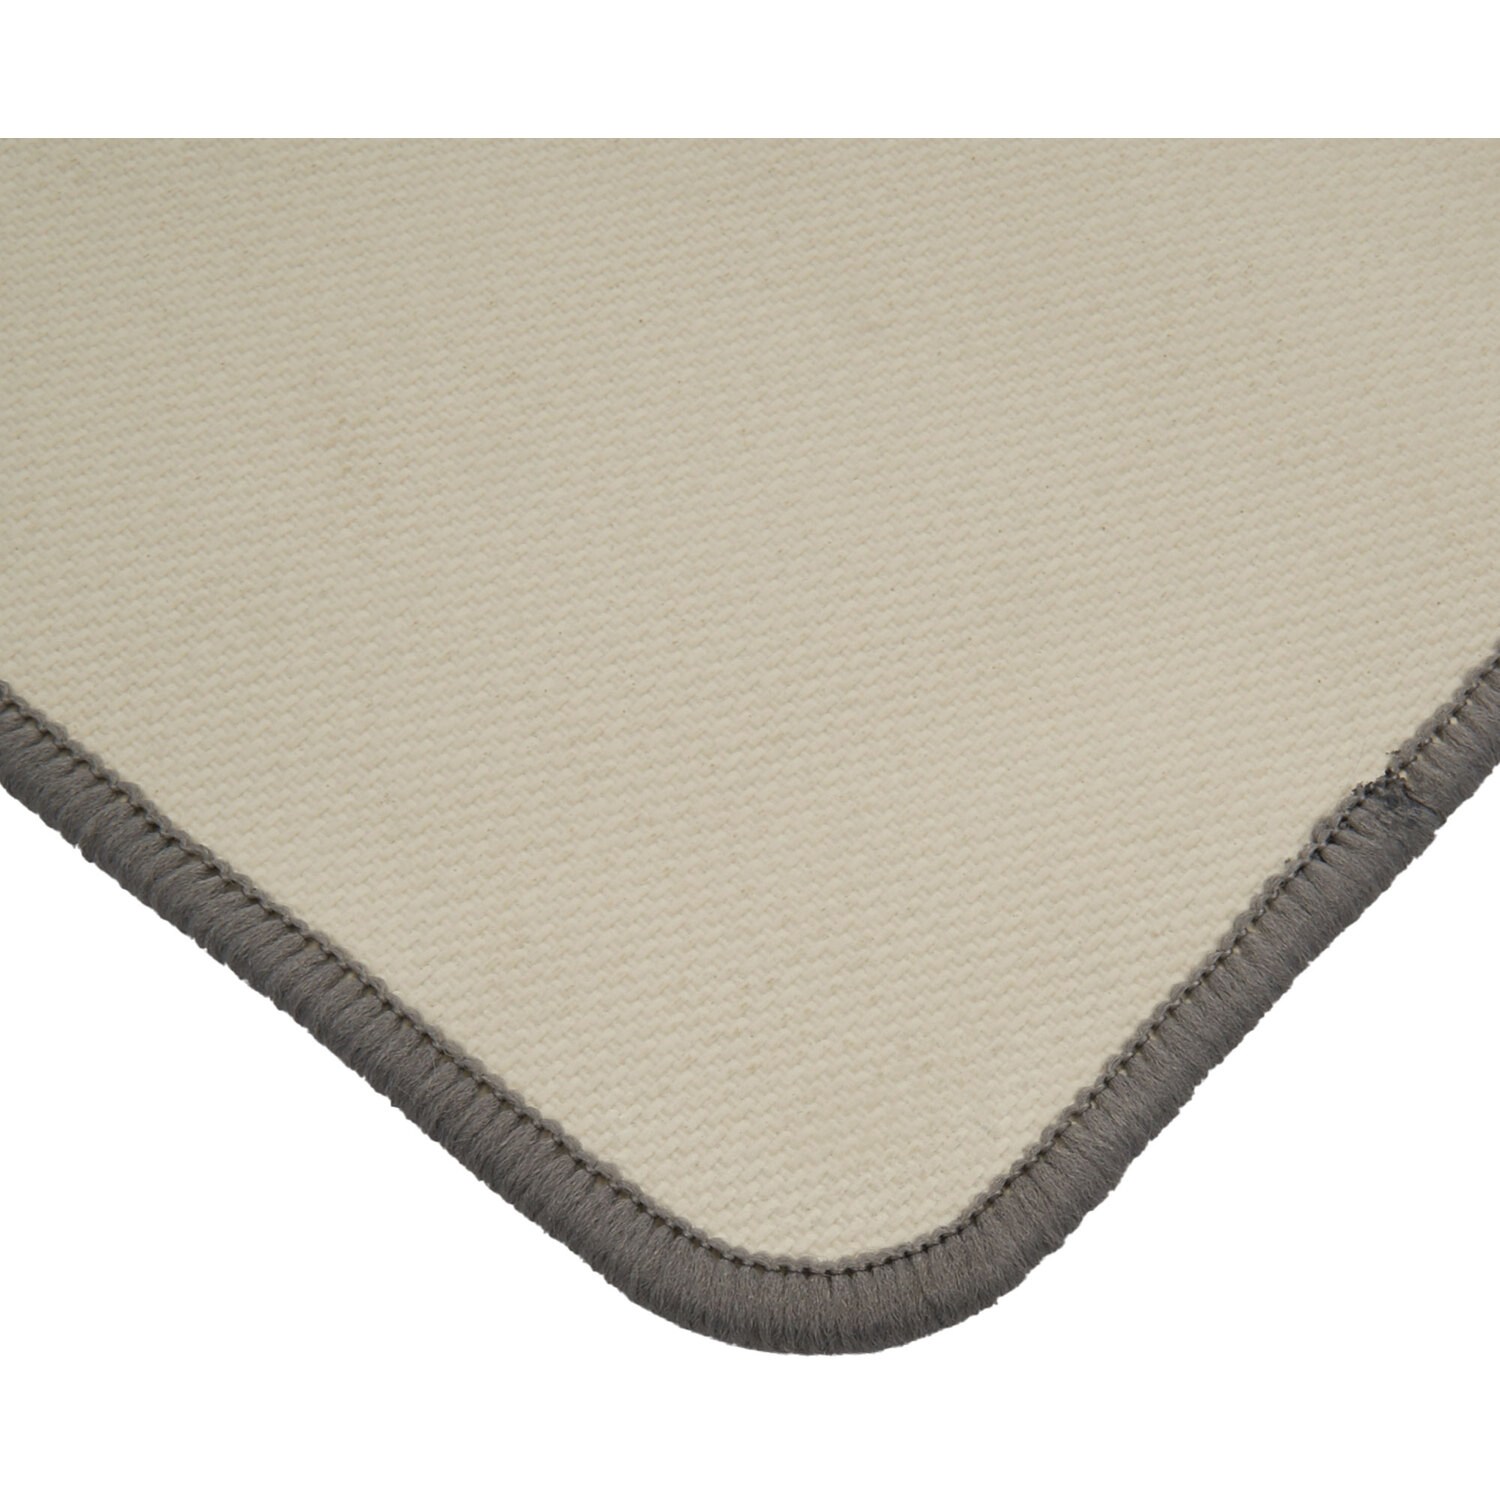 Washable Doormat - Grey Image 4